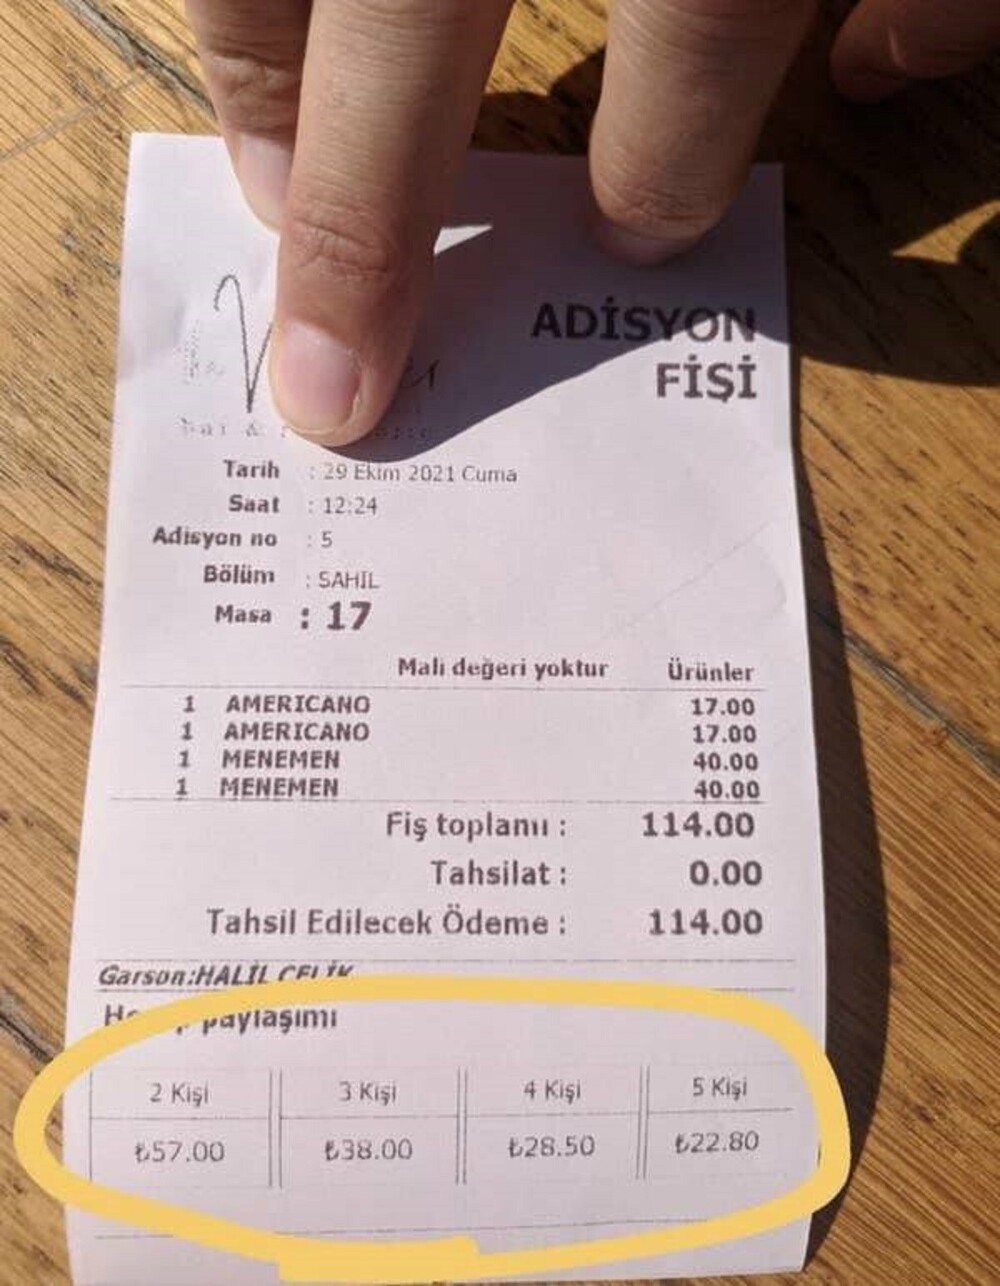 16. В Турции есть ресторан, в чеках которого показано, как можно легко разделить счет, и вам не придется делать никаких вычислений